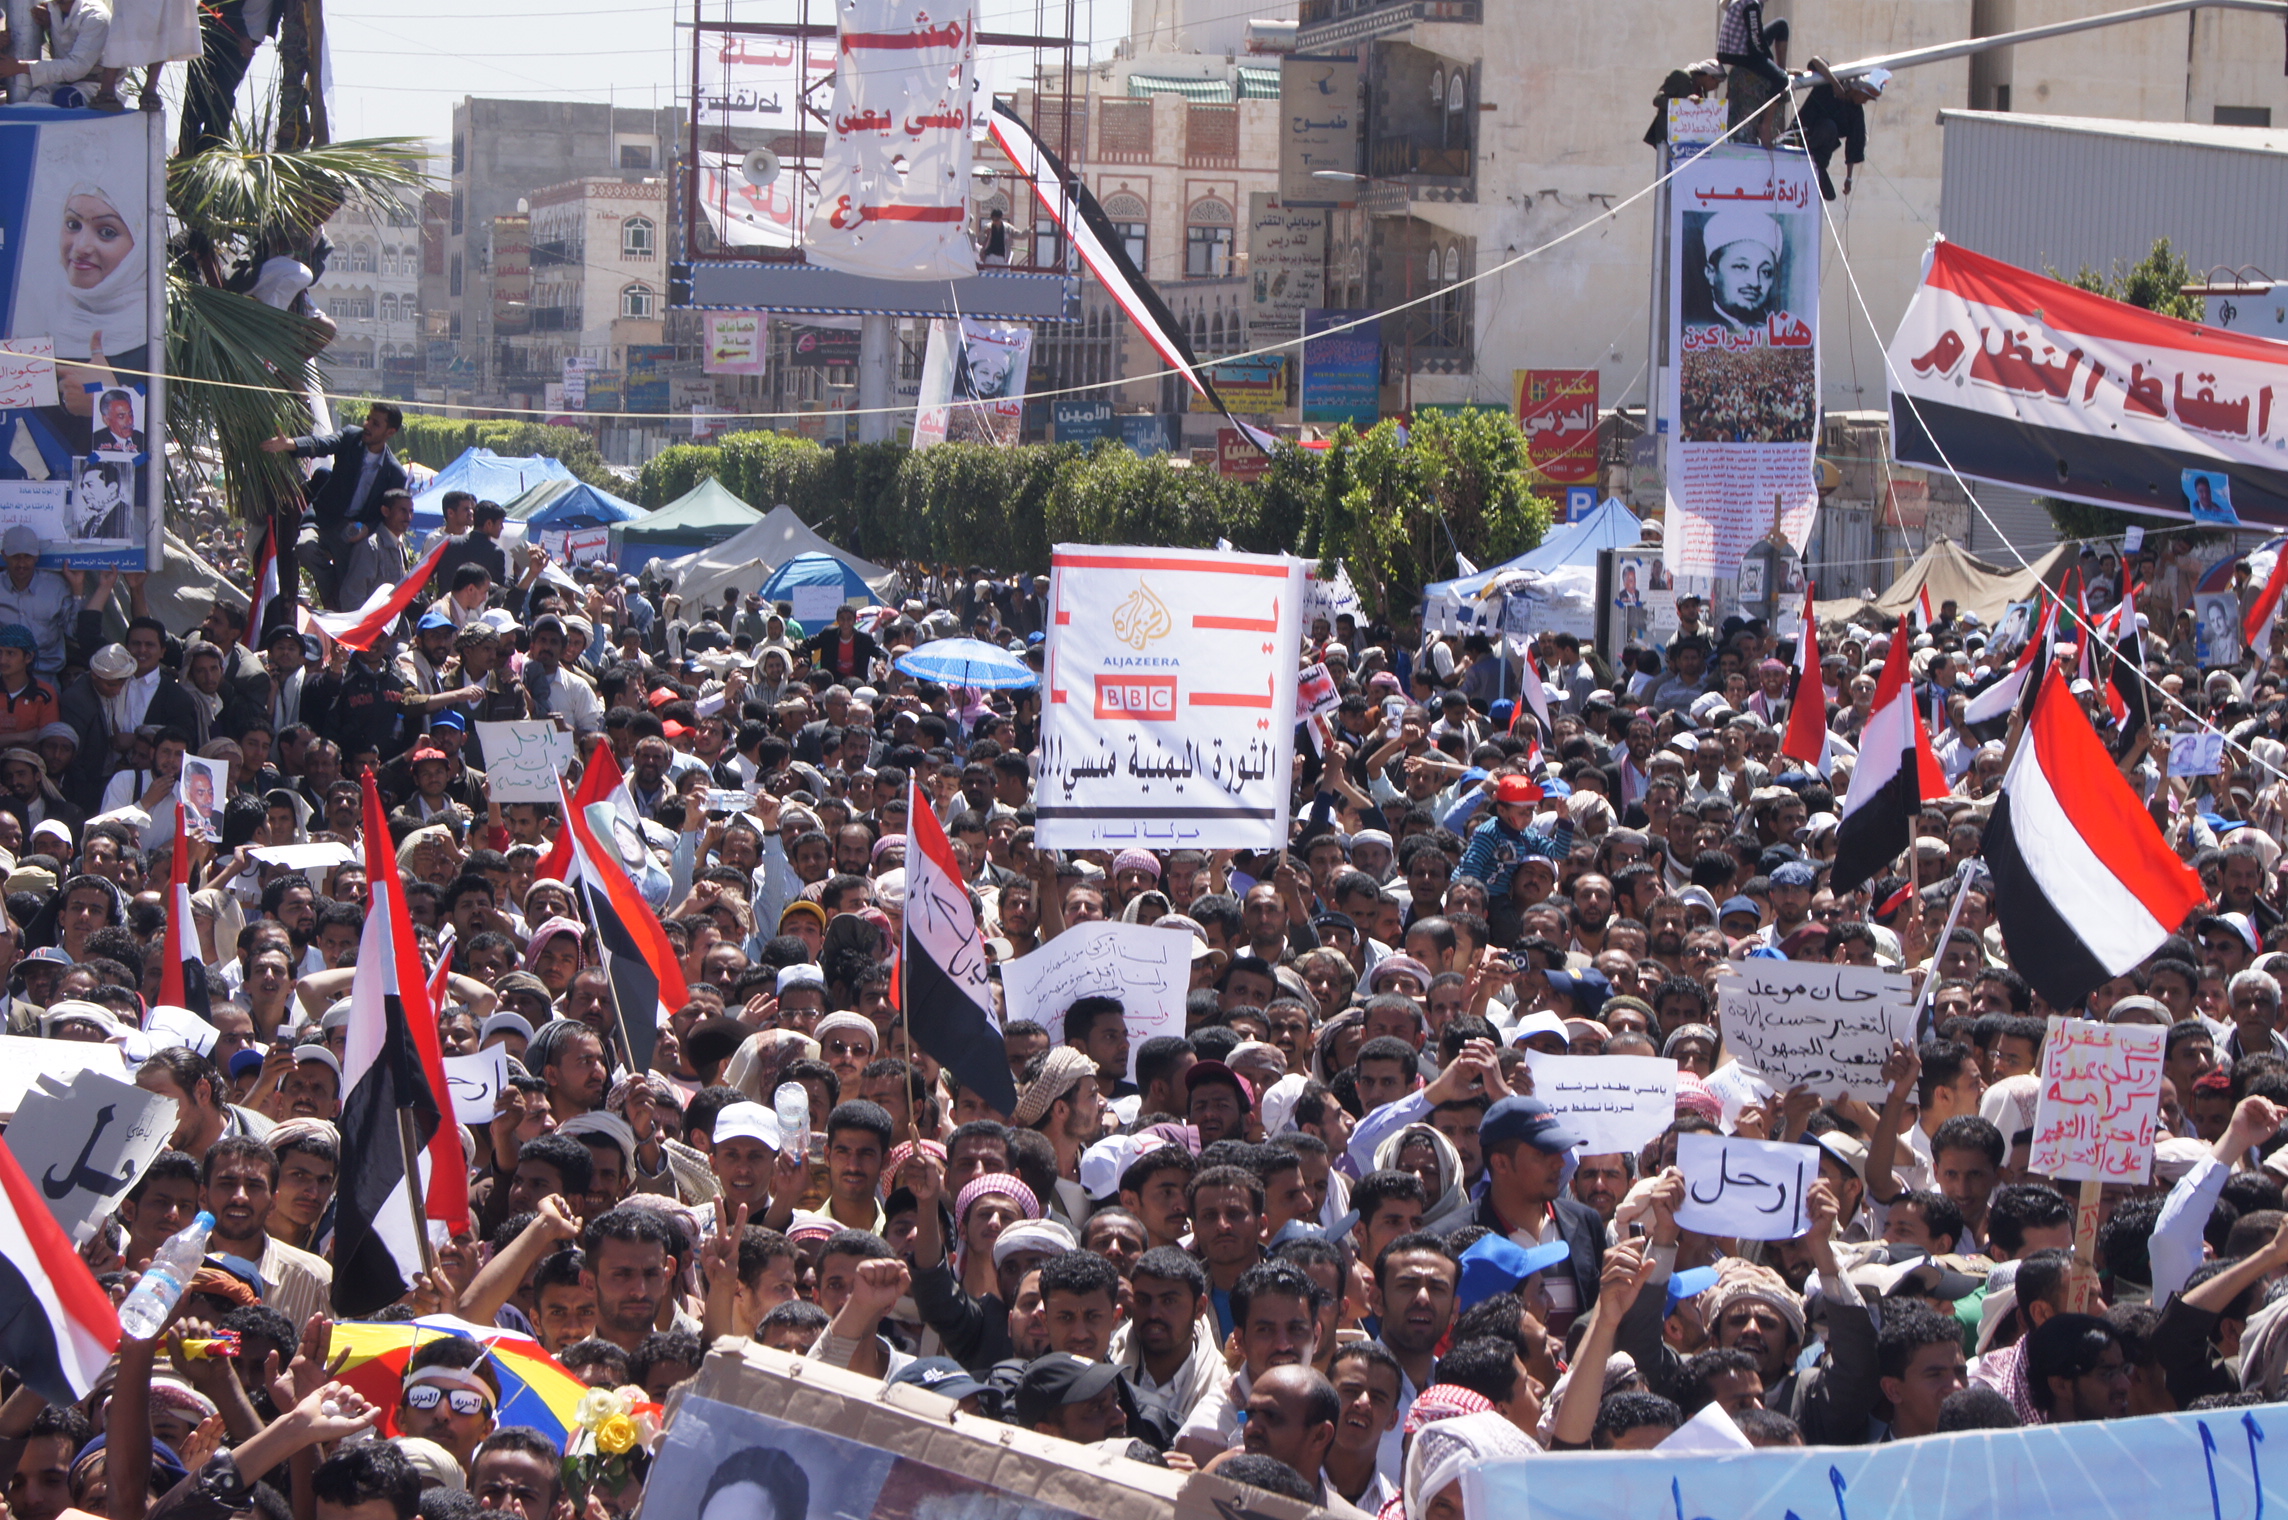 UPDATE 2-Saudi-led coalition says it freed 200 Houthi prisoners